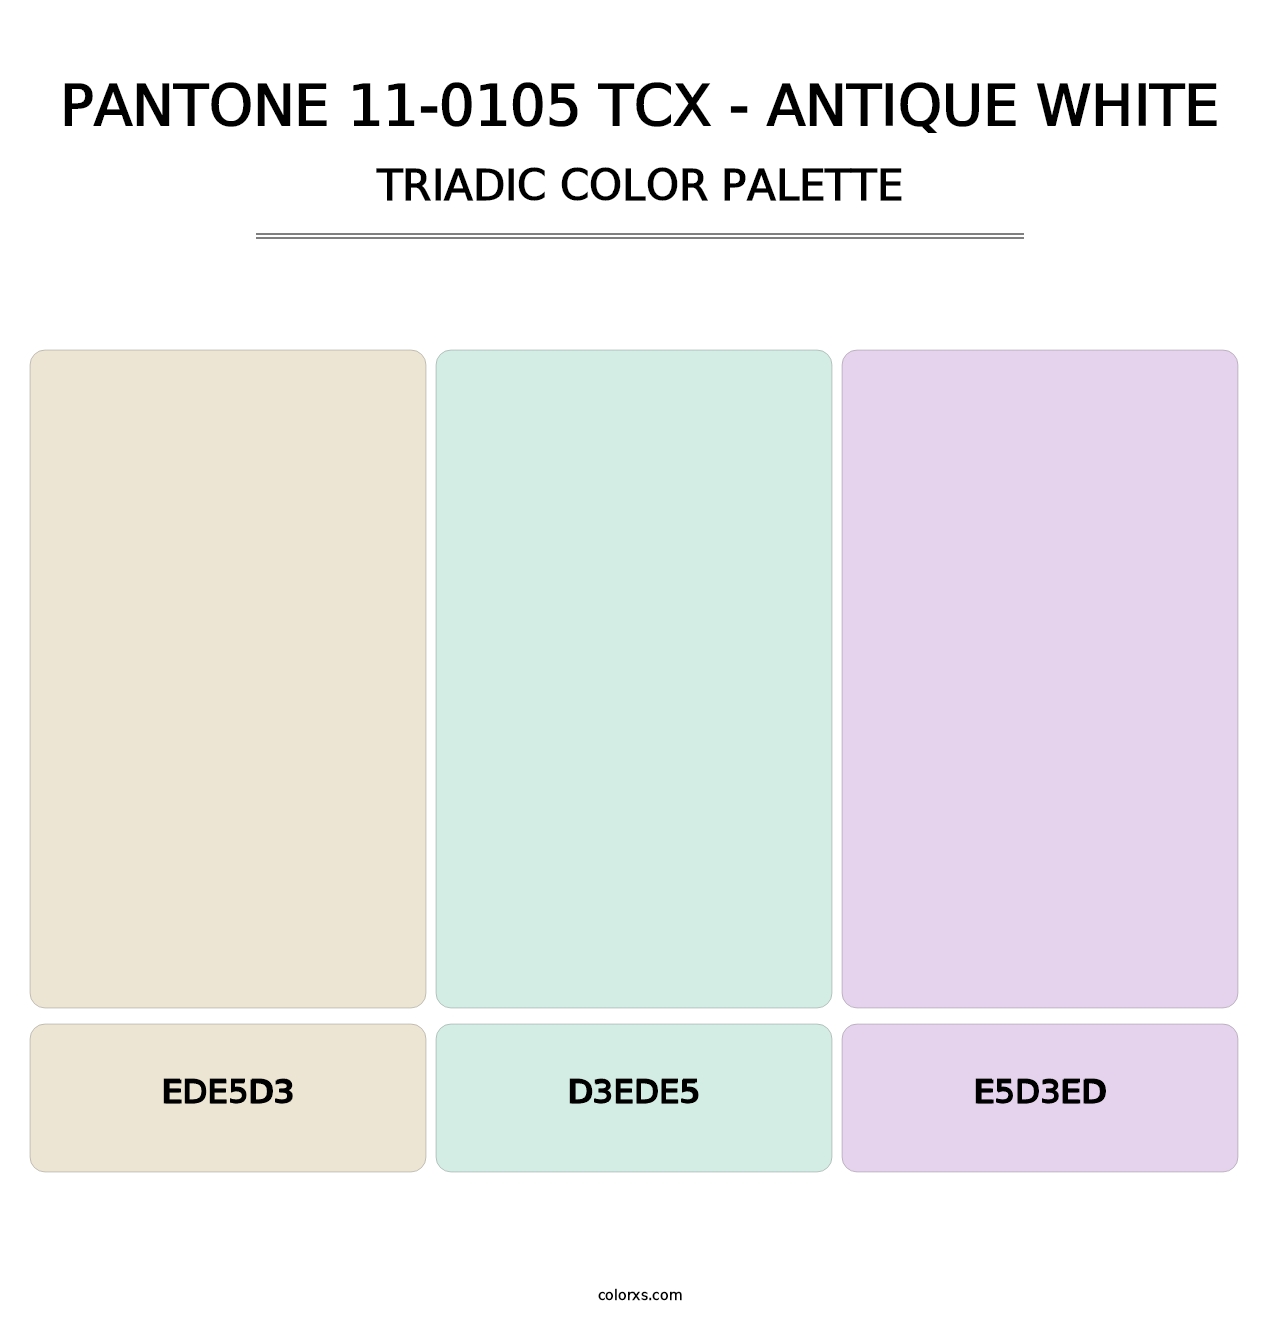 PANTONE 11-0105 TCX - Antique White - Triadic Color Palette